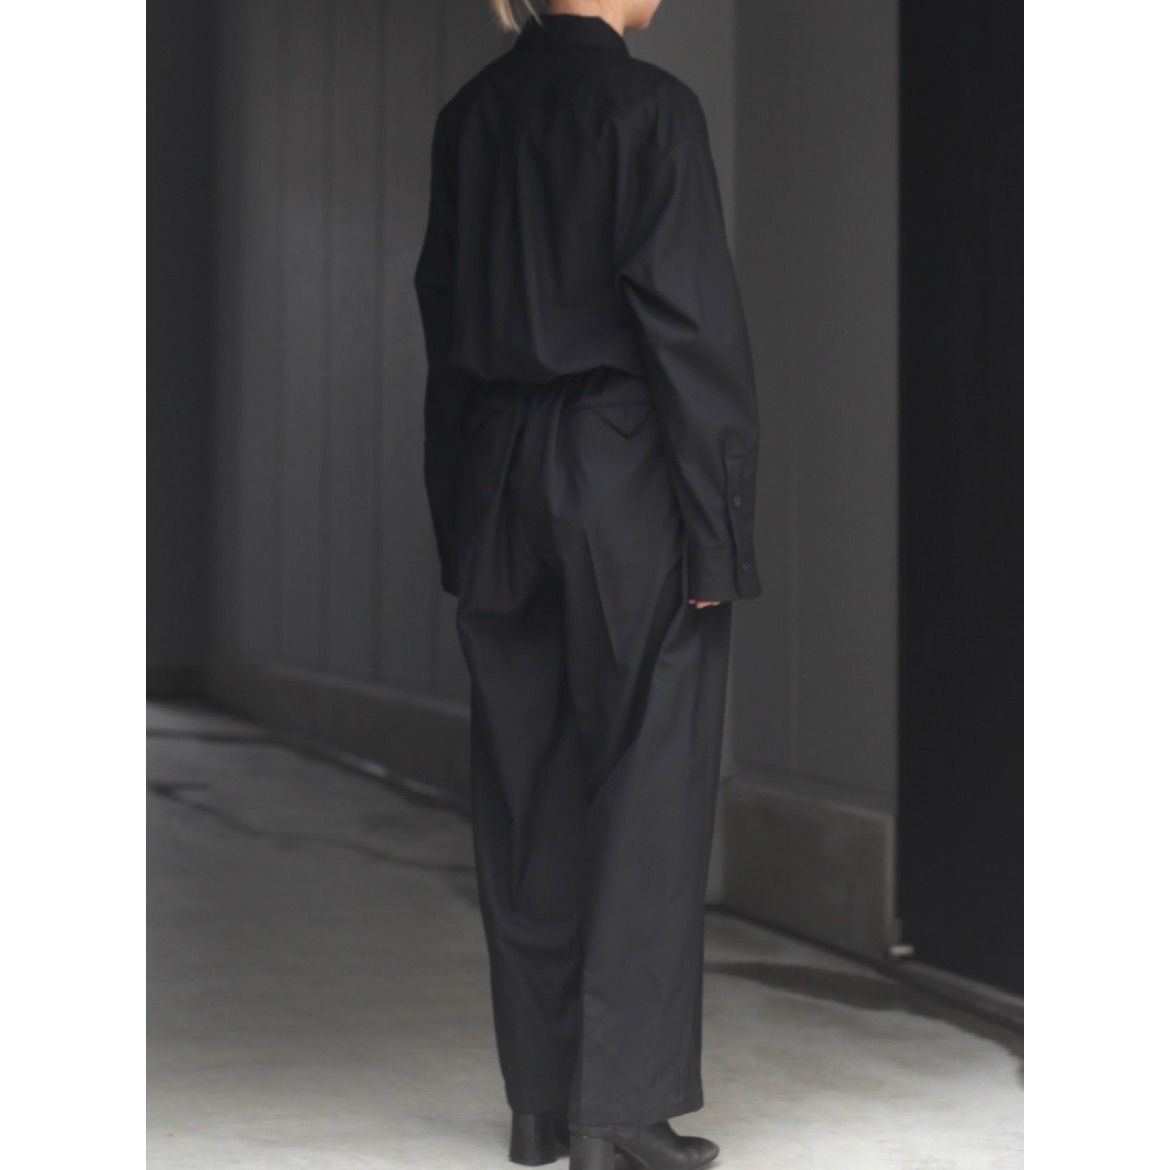 YOKO SAKAMOTO Suit Jump Suit BLACK-